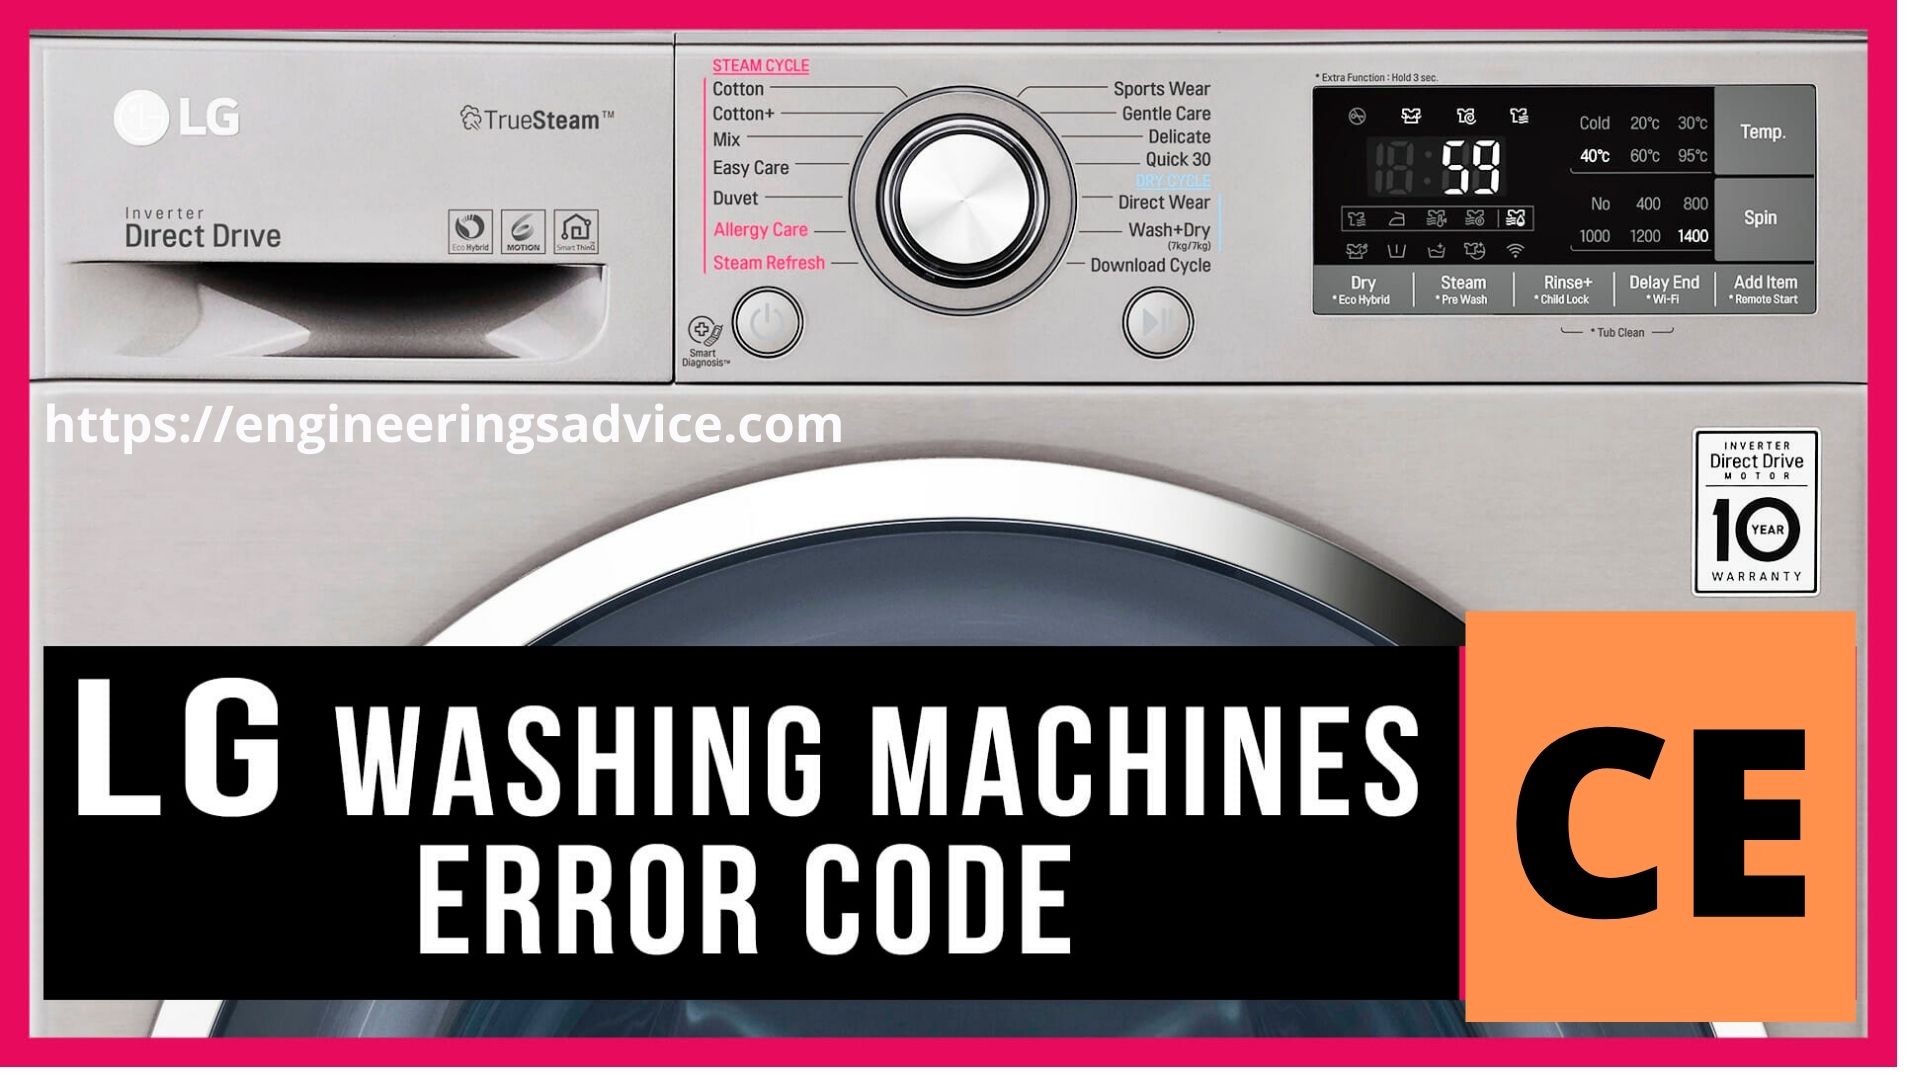 LG washing machine error code CE